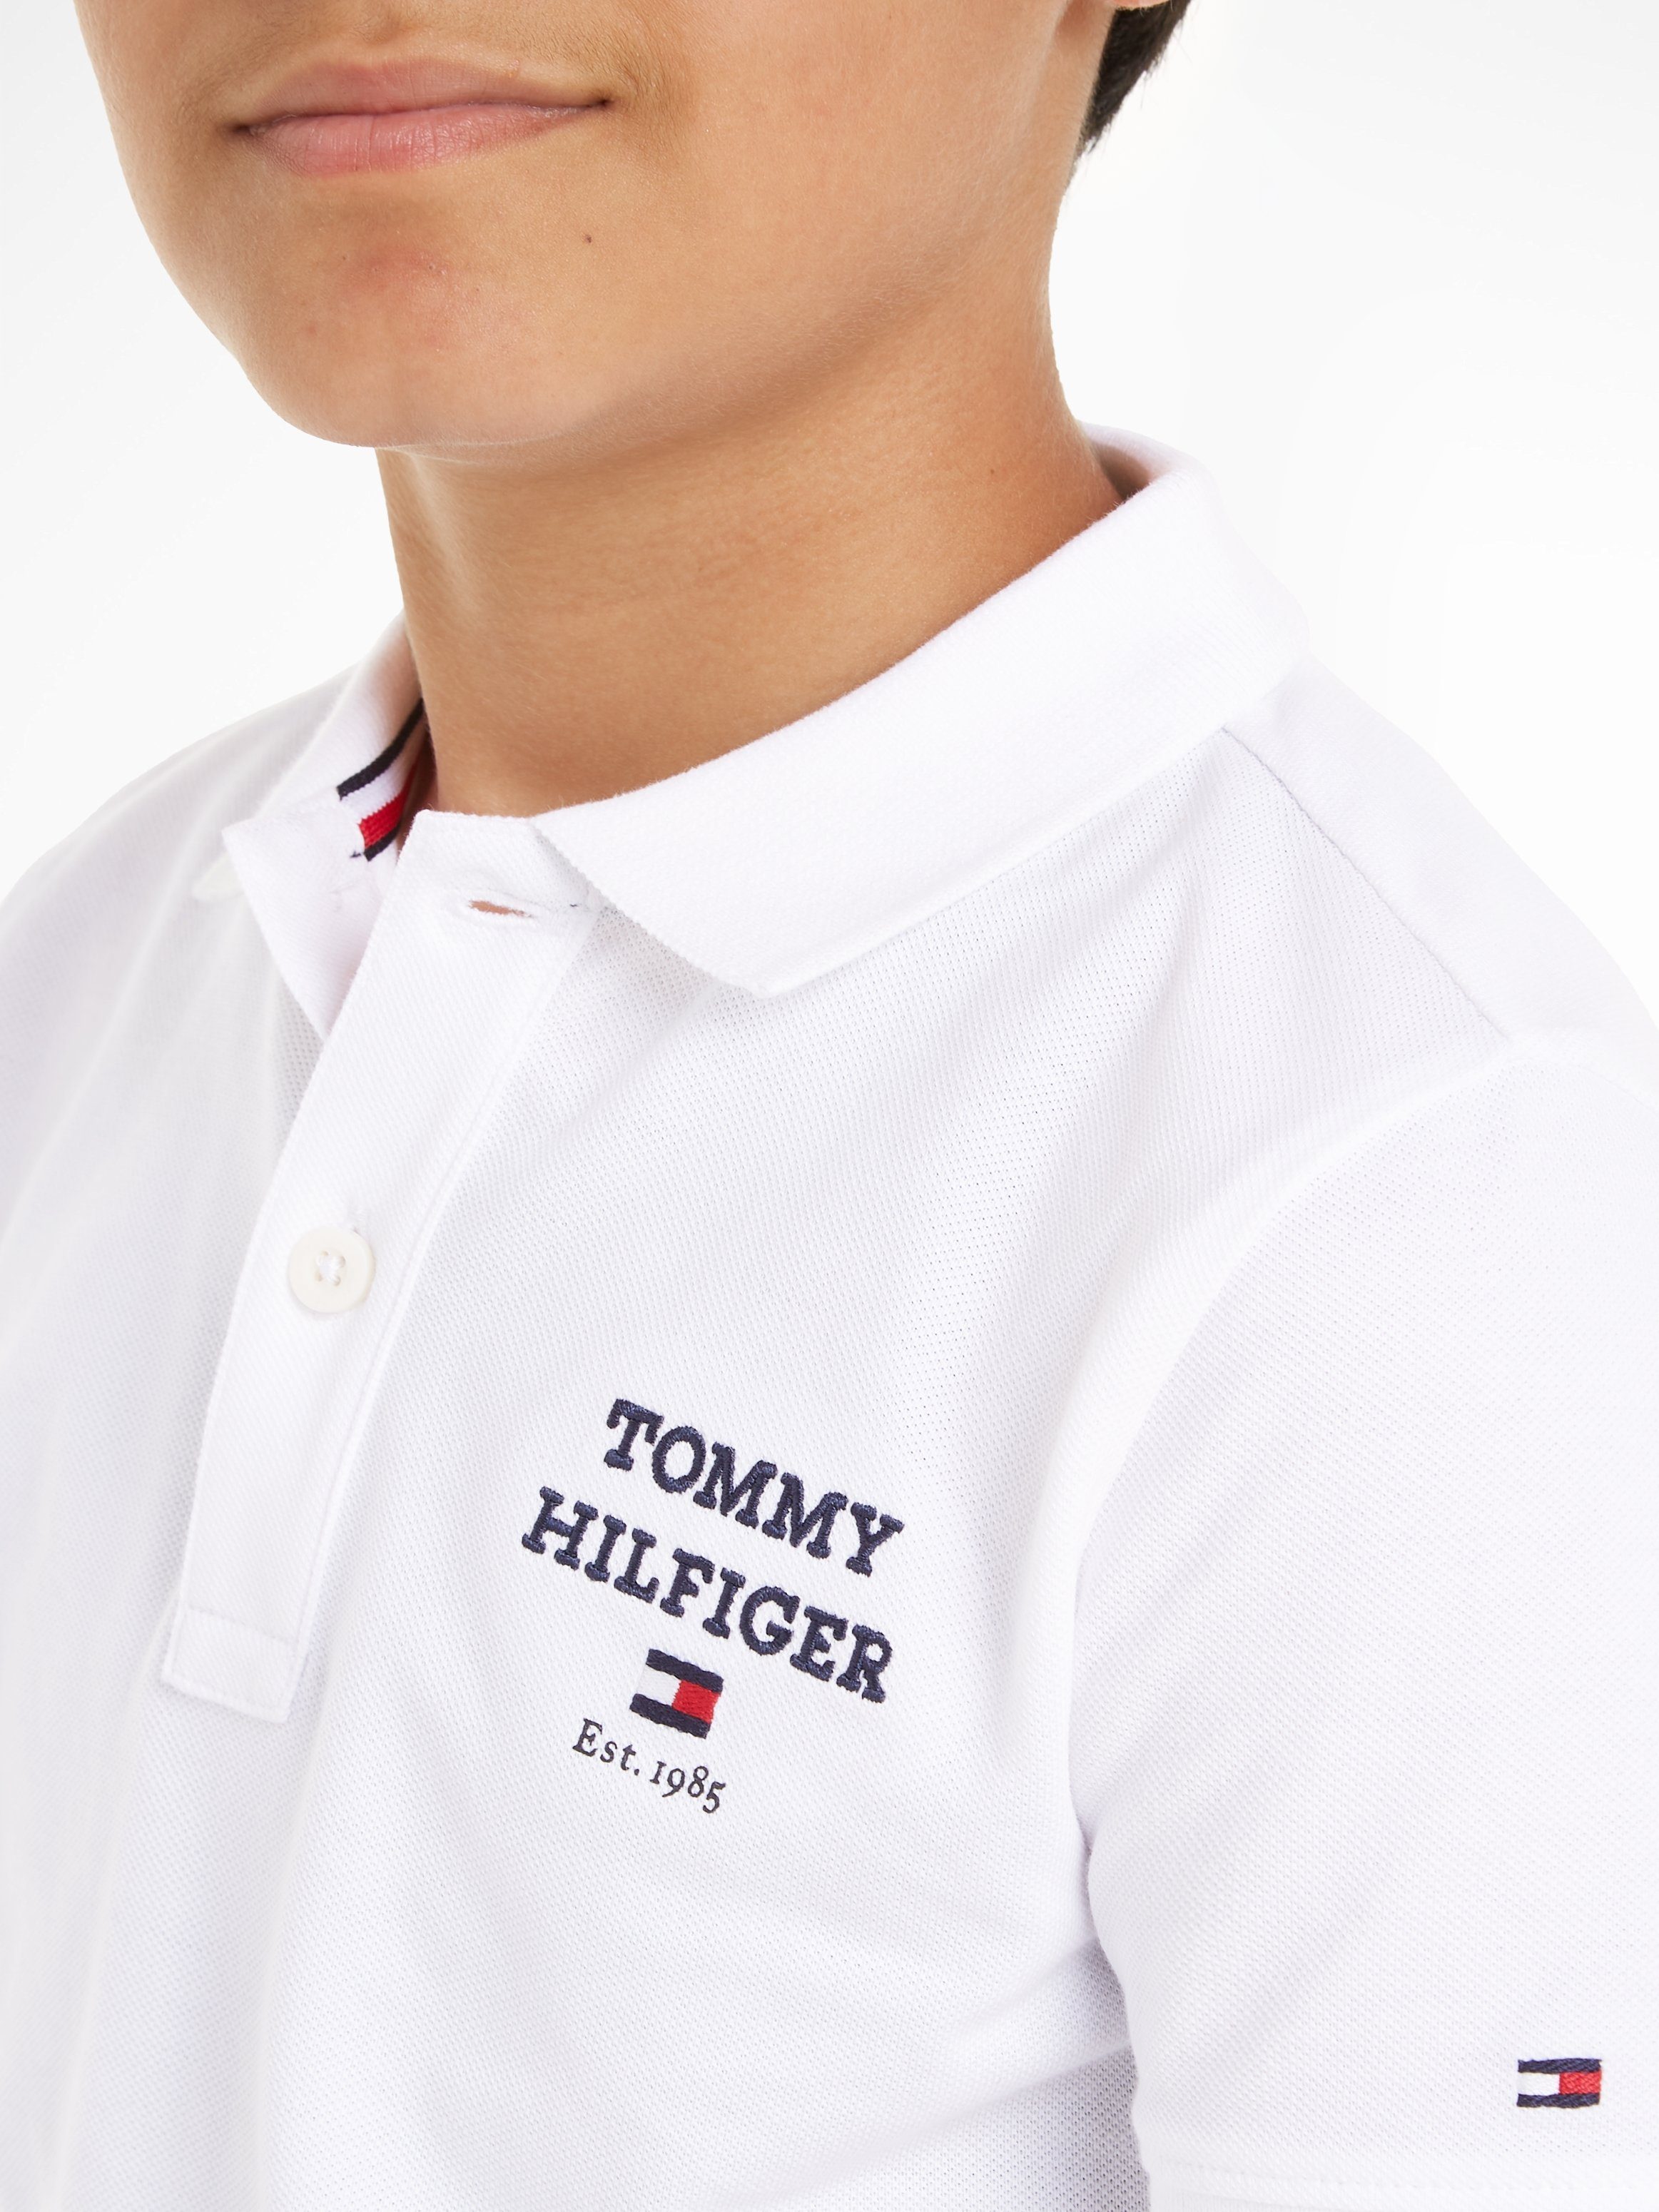 Tommy Hilfiger Poloshirt S/S POLO white LOGO TH mit Logostickerei